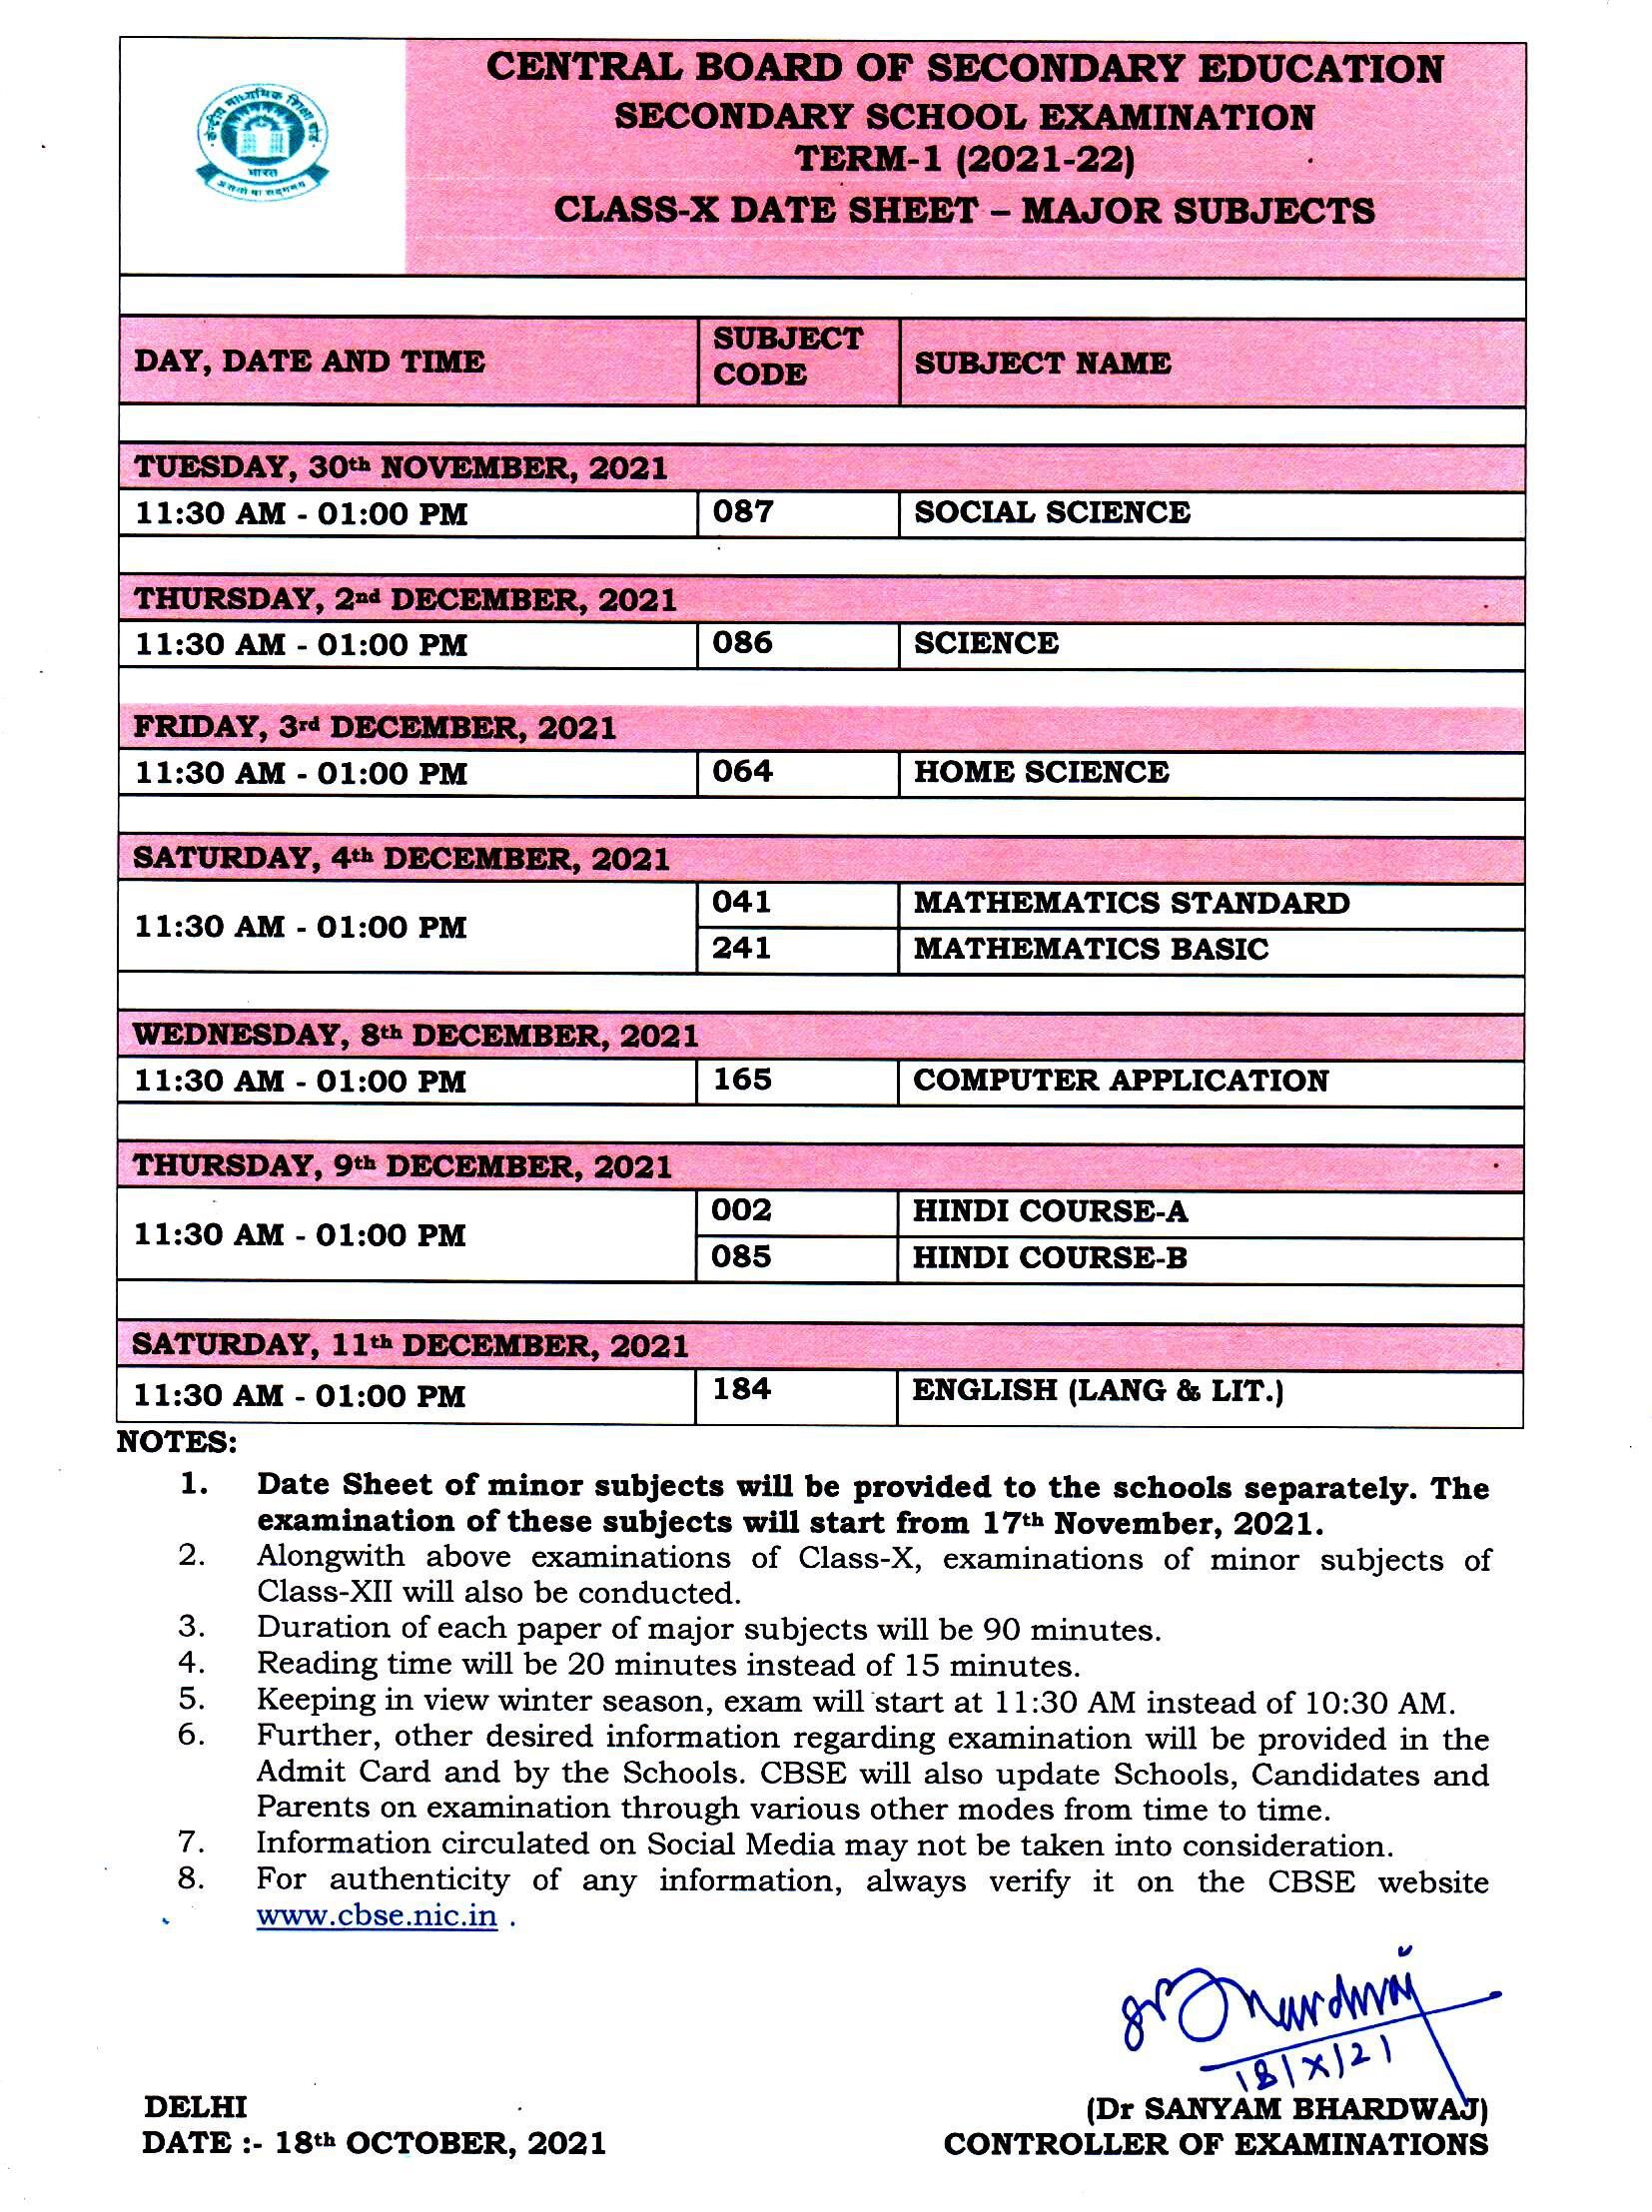 CBSE class 10 date sheet 2021-22